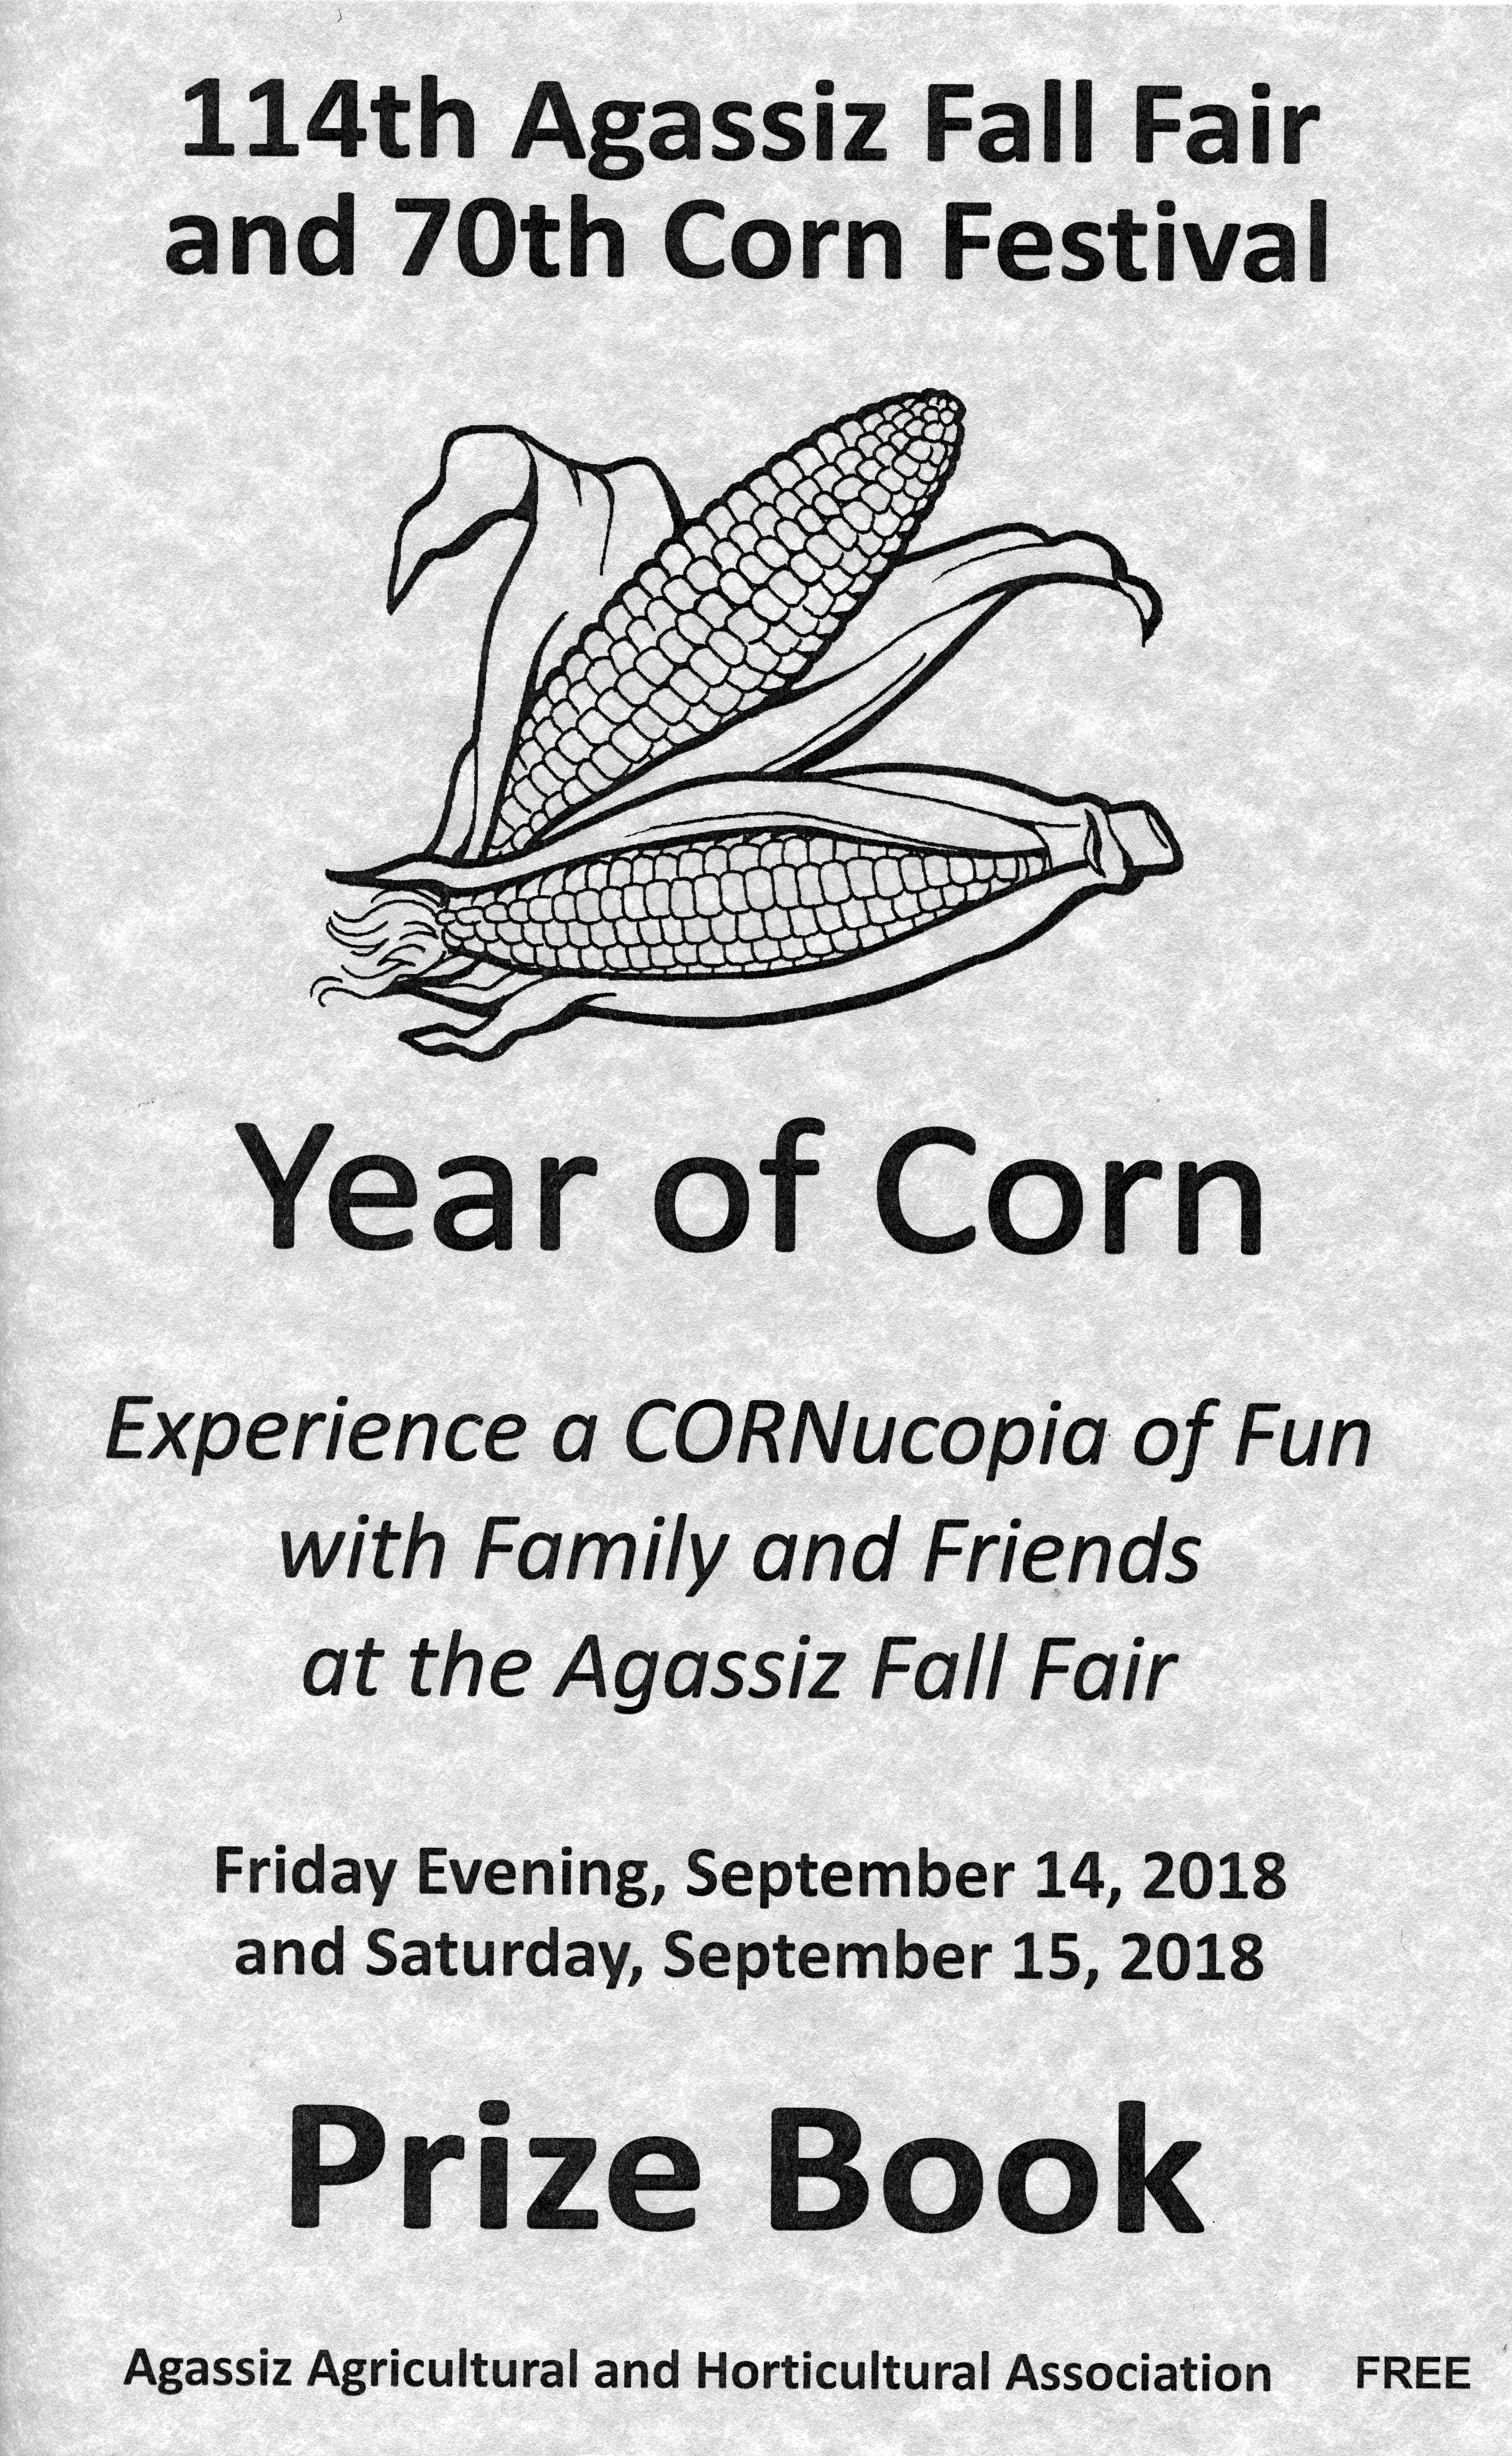 Image en noir et blanc du livre de prix pour la 114e Agassiz Fall Fair et le 70e Corn Festival comportant un croquis de deux épis de maïs.